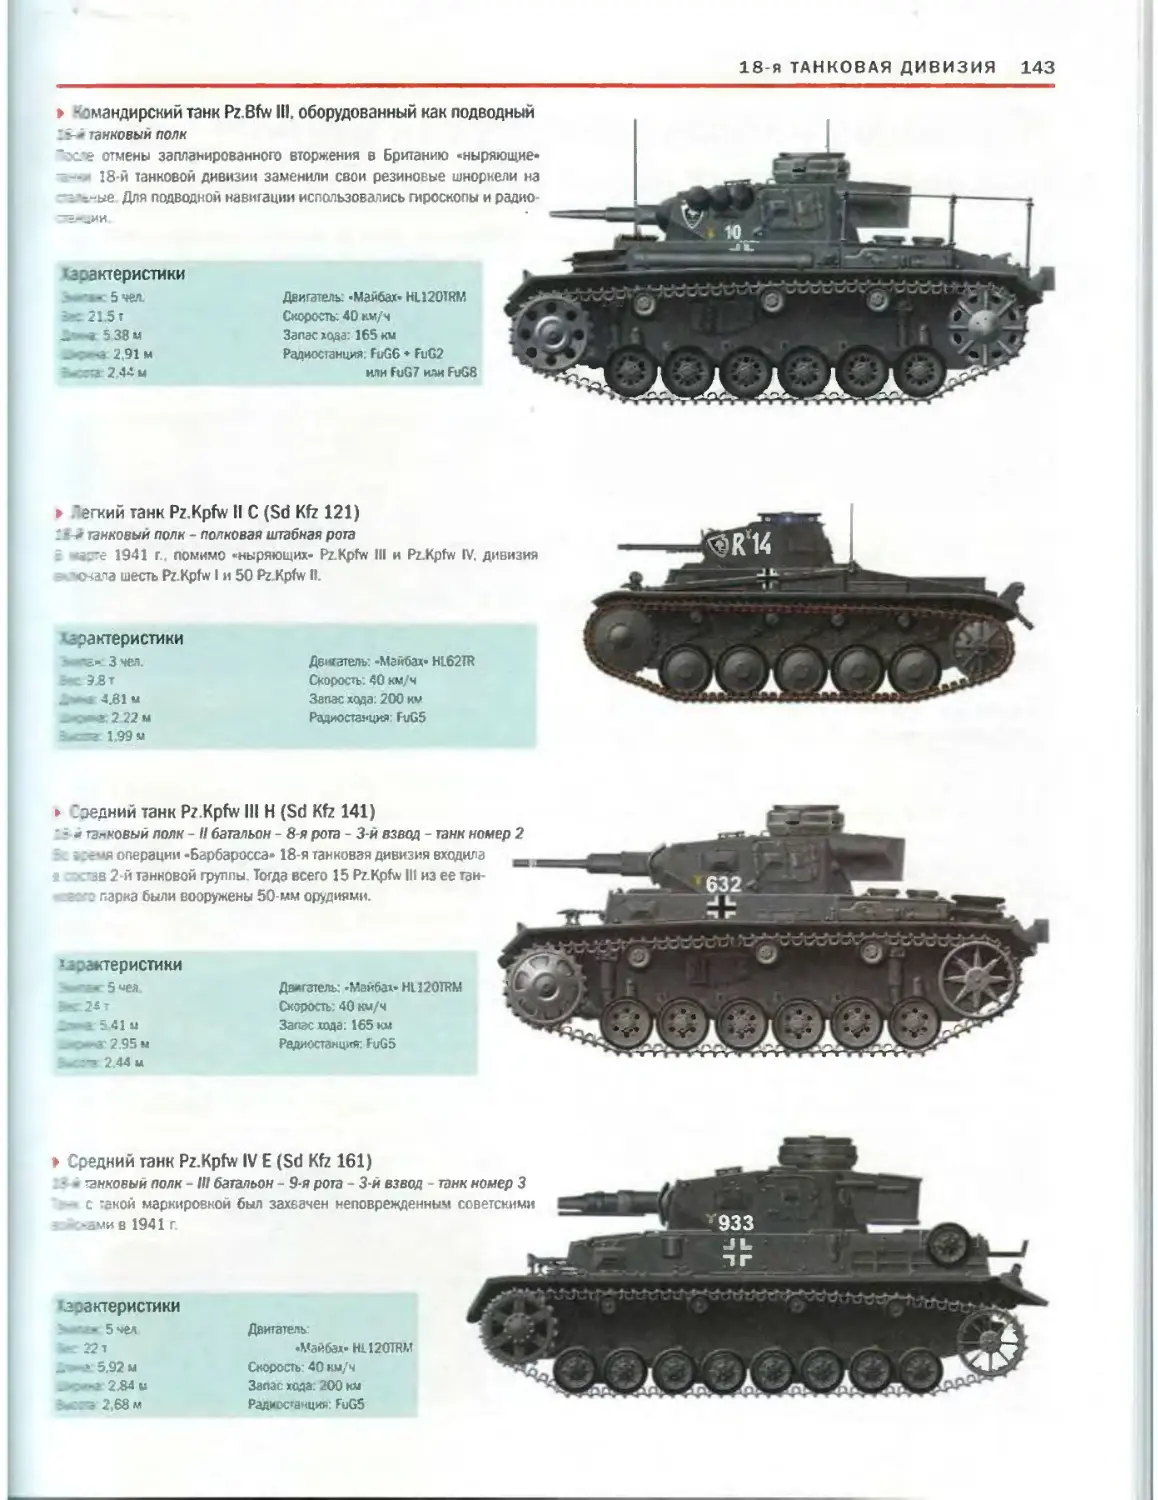 Количество танков в танковом полку вермахта